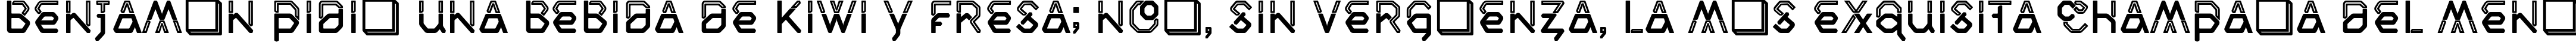 Пример написания шрифтом Inline текста на испанском